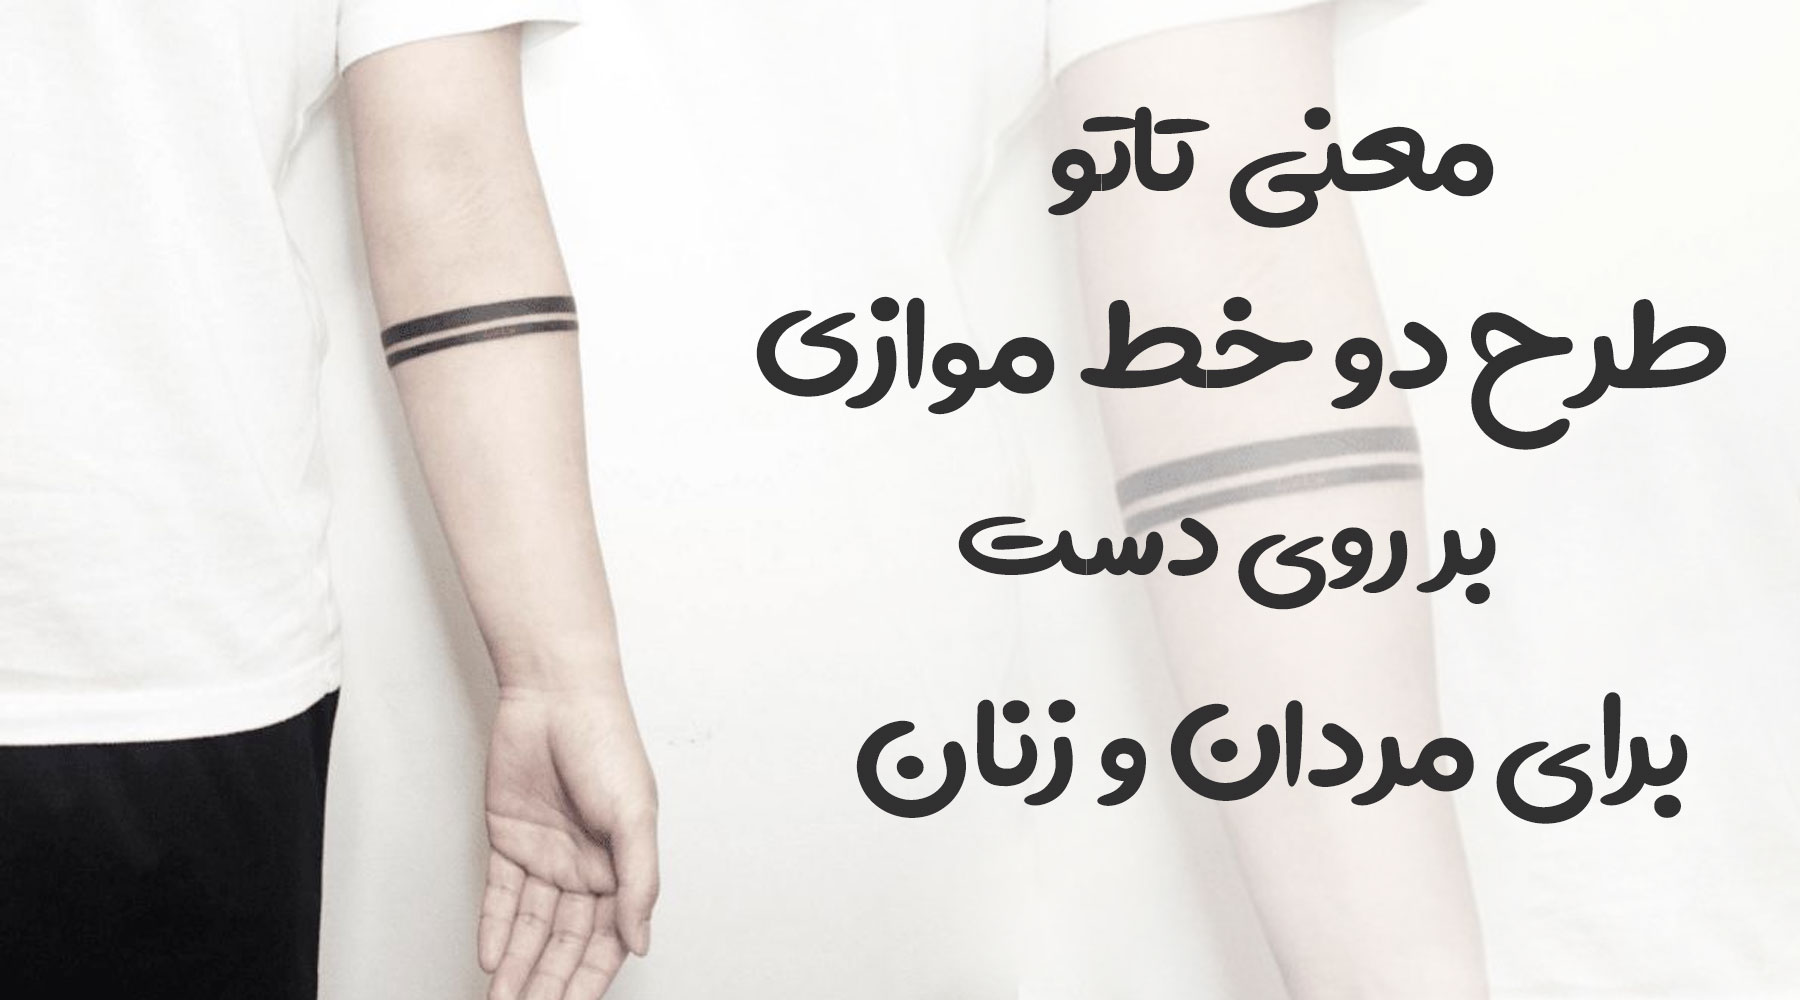 معنی تتو طرح دو خط موازی بر روی دست برای مردان و زنان